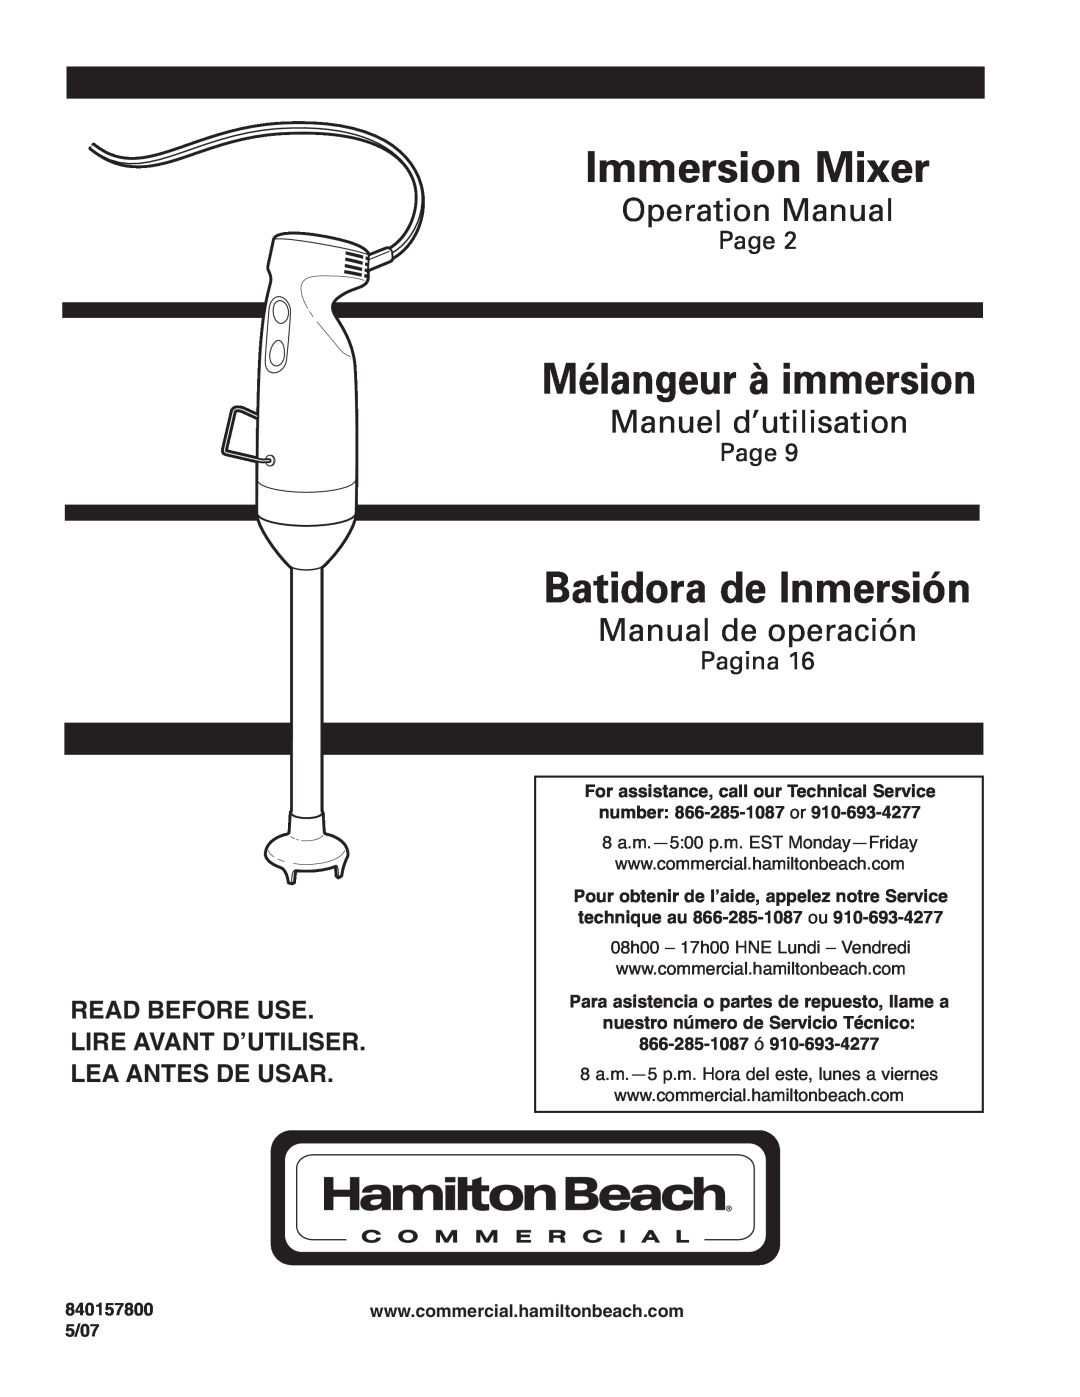 Hamilton Beach Immersion Mixer operation manual Mélangeur à immersion, Batidora de Inmersión, Manuel d’utilisation, Page 